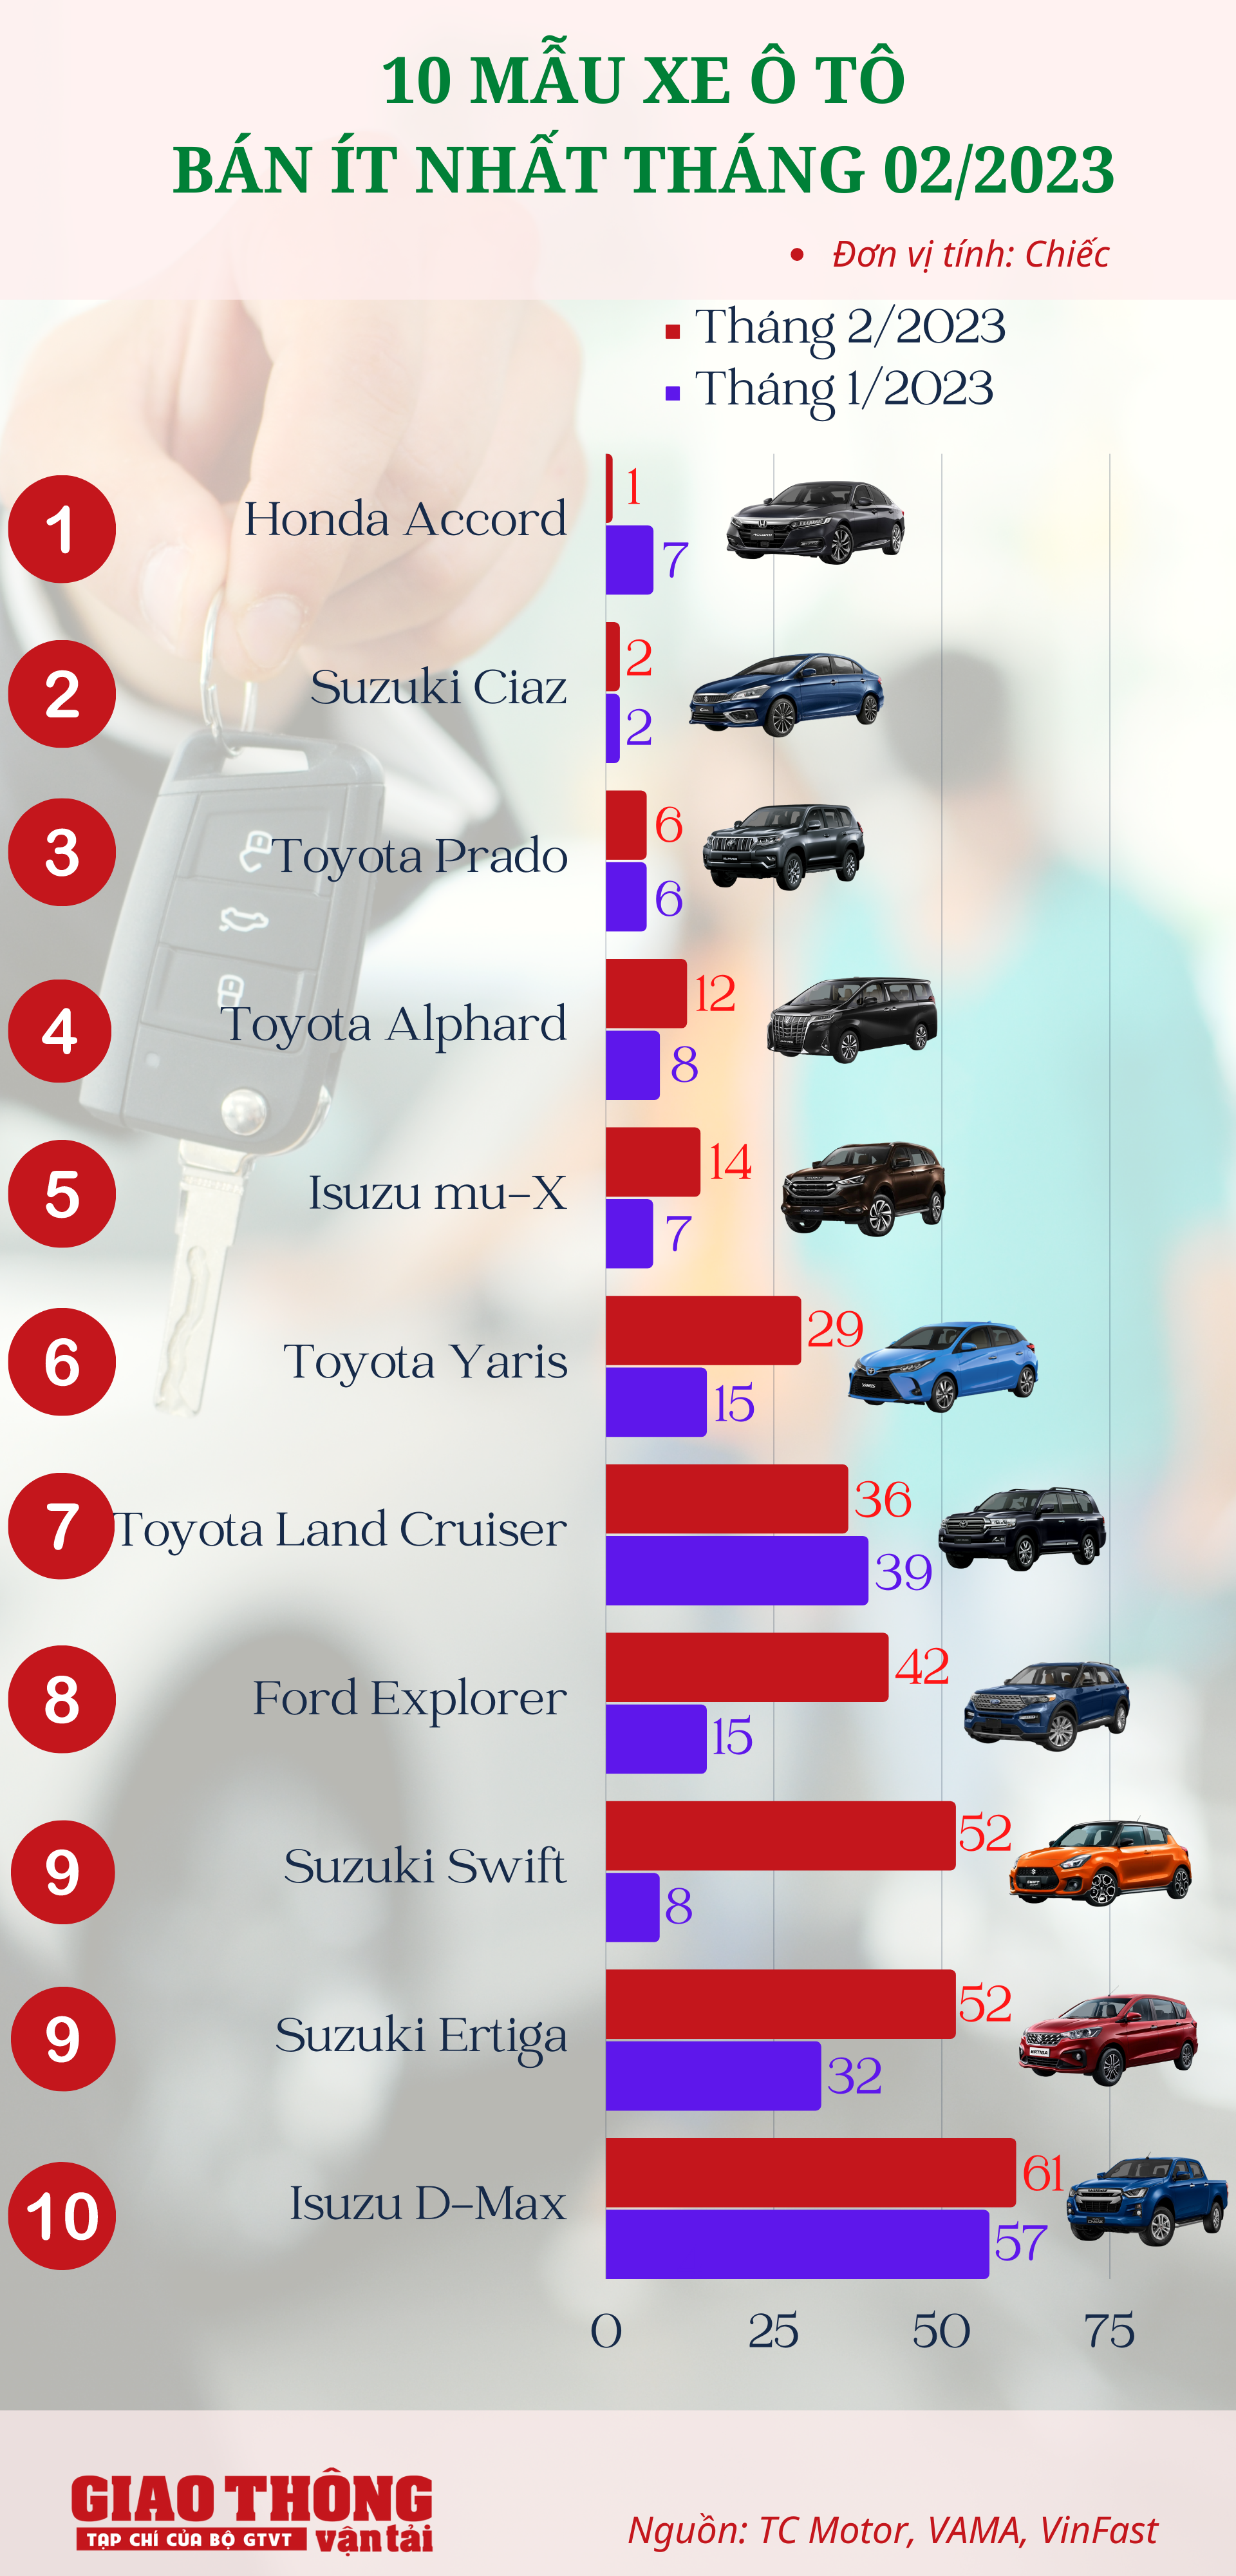 10 ô tô bán ít nhất tháng 2/2023: Honda Accord kén khách nhất, Toyota Yaris vẫn tậm tịt - Ảnh 1.